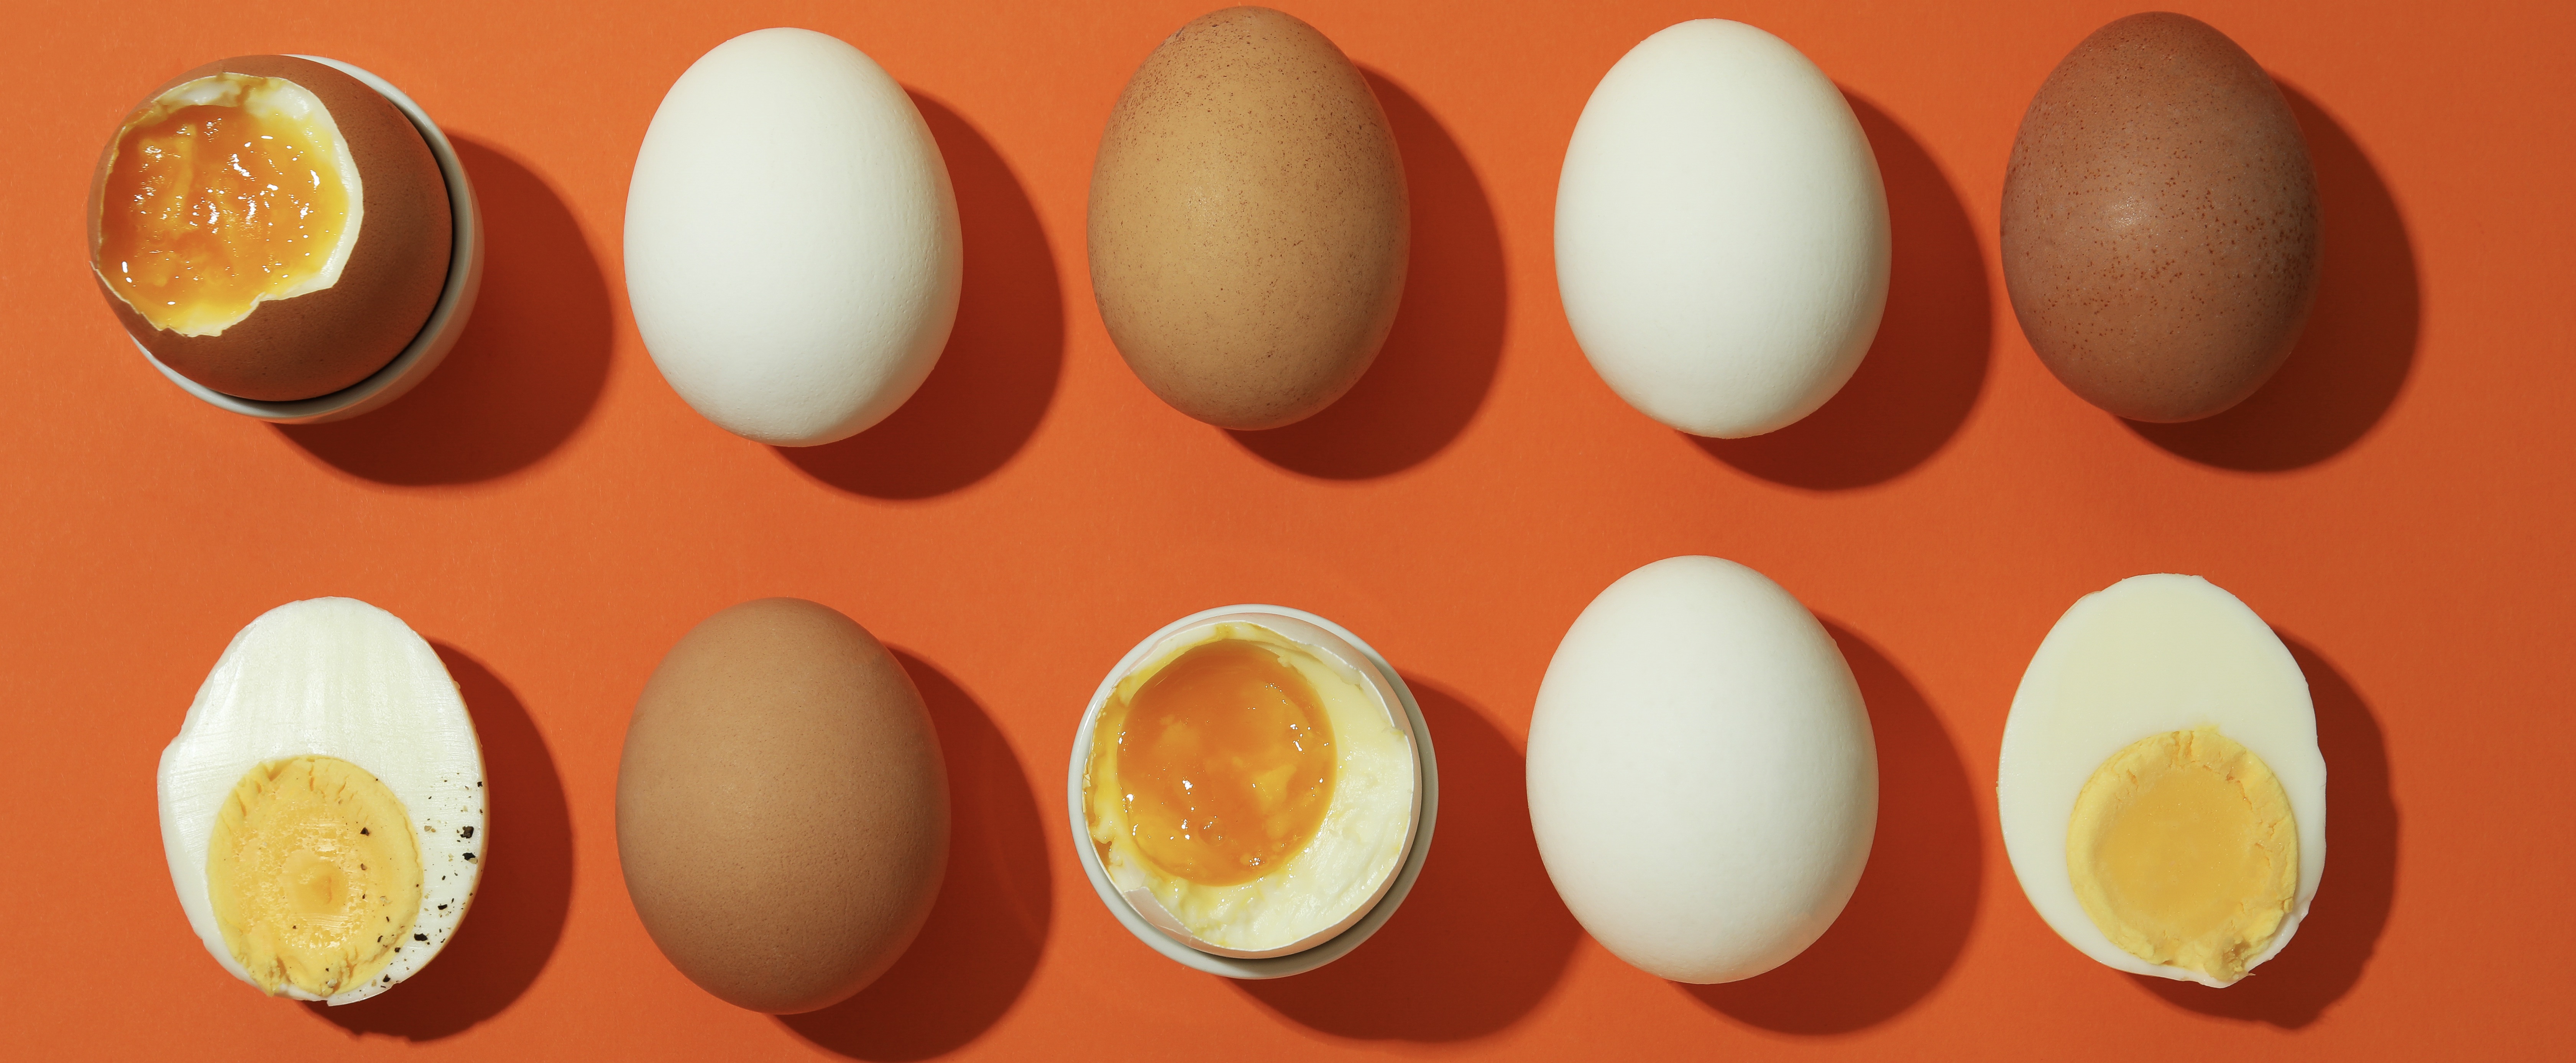 Waarom je eierschalen nooit zomaar wil weggooien 